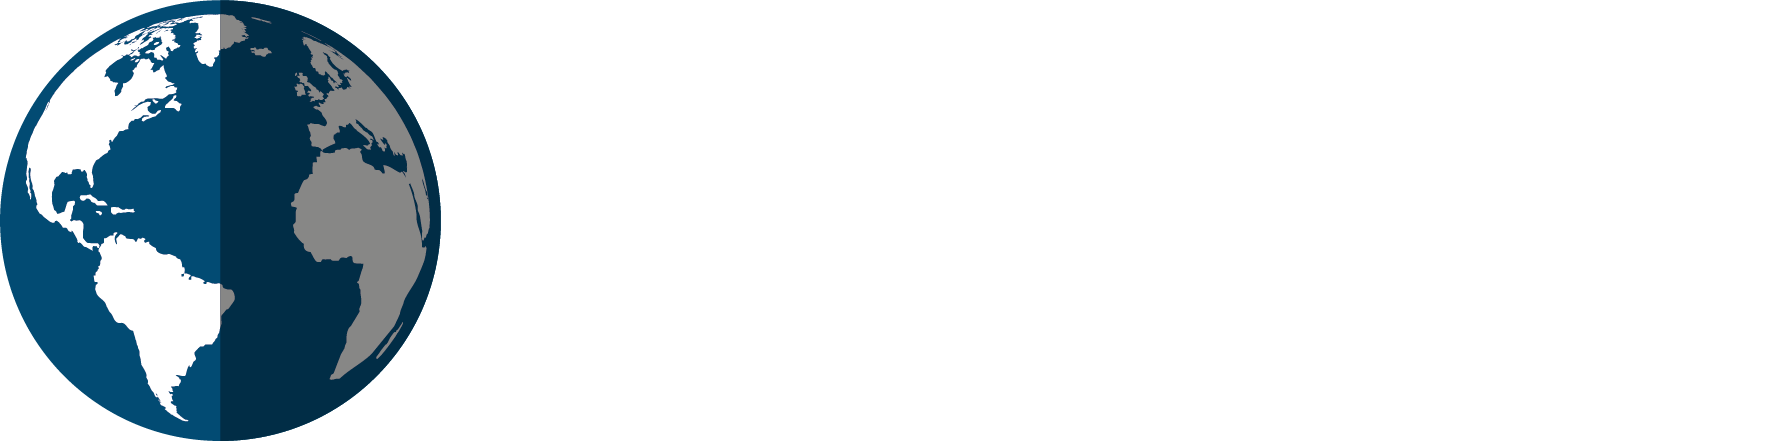 globobooks